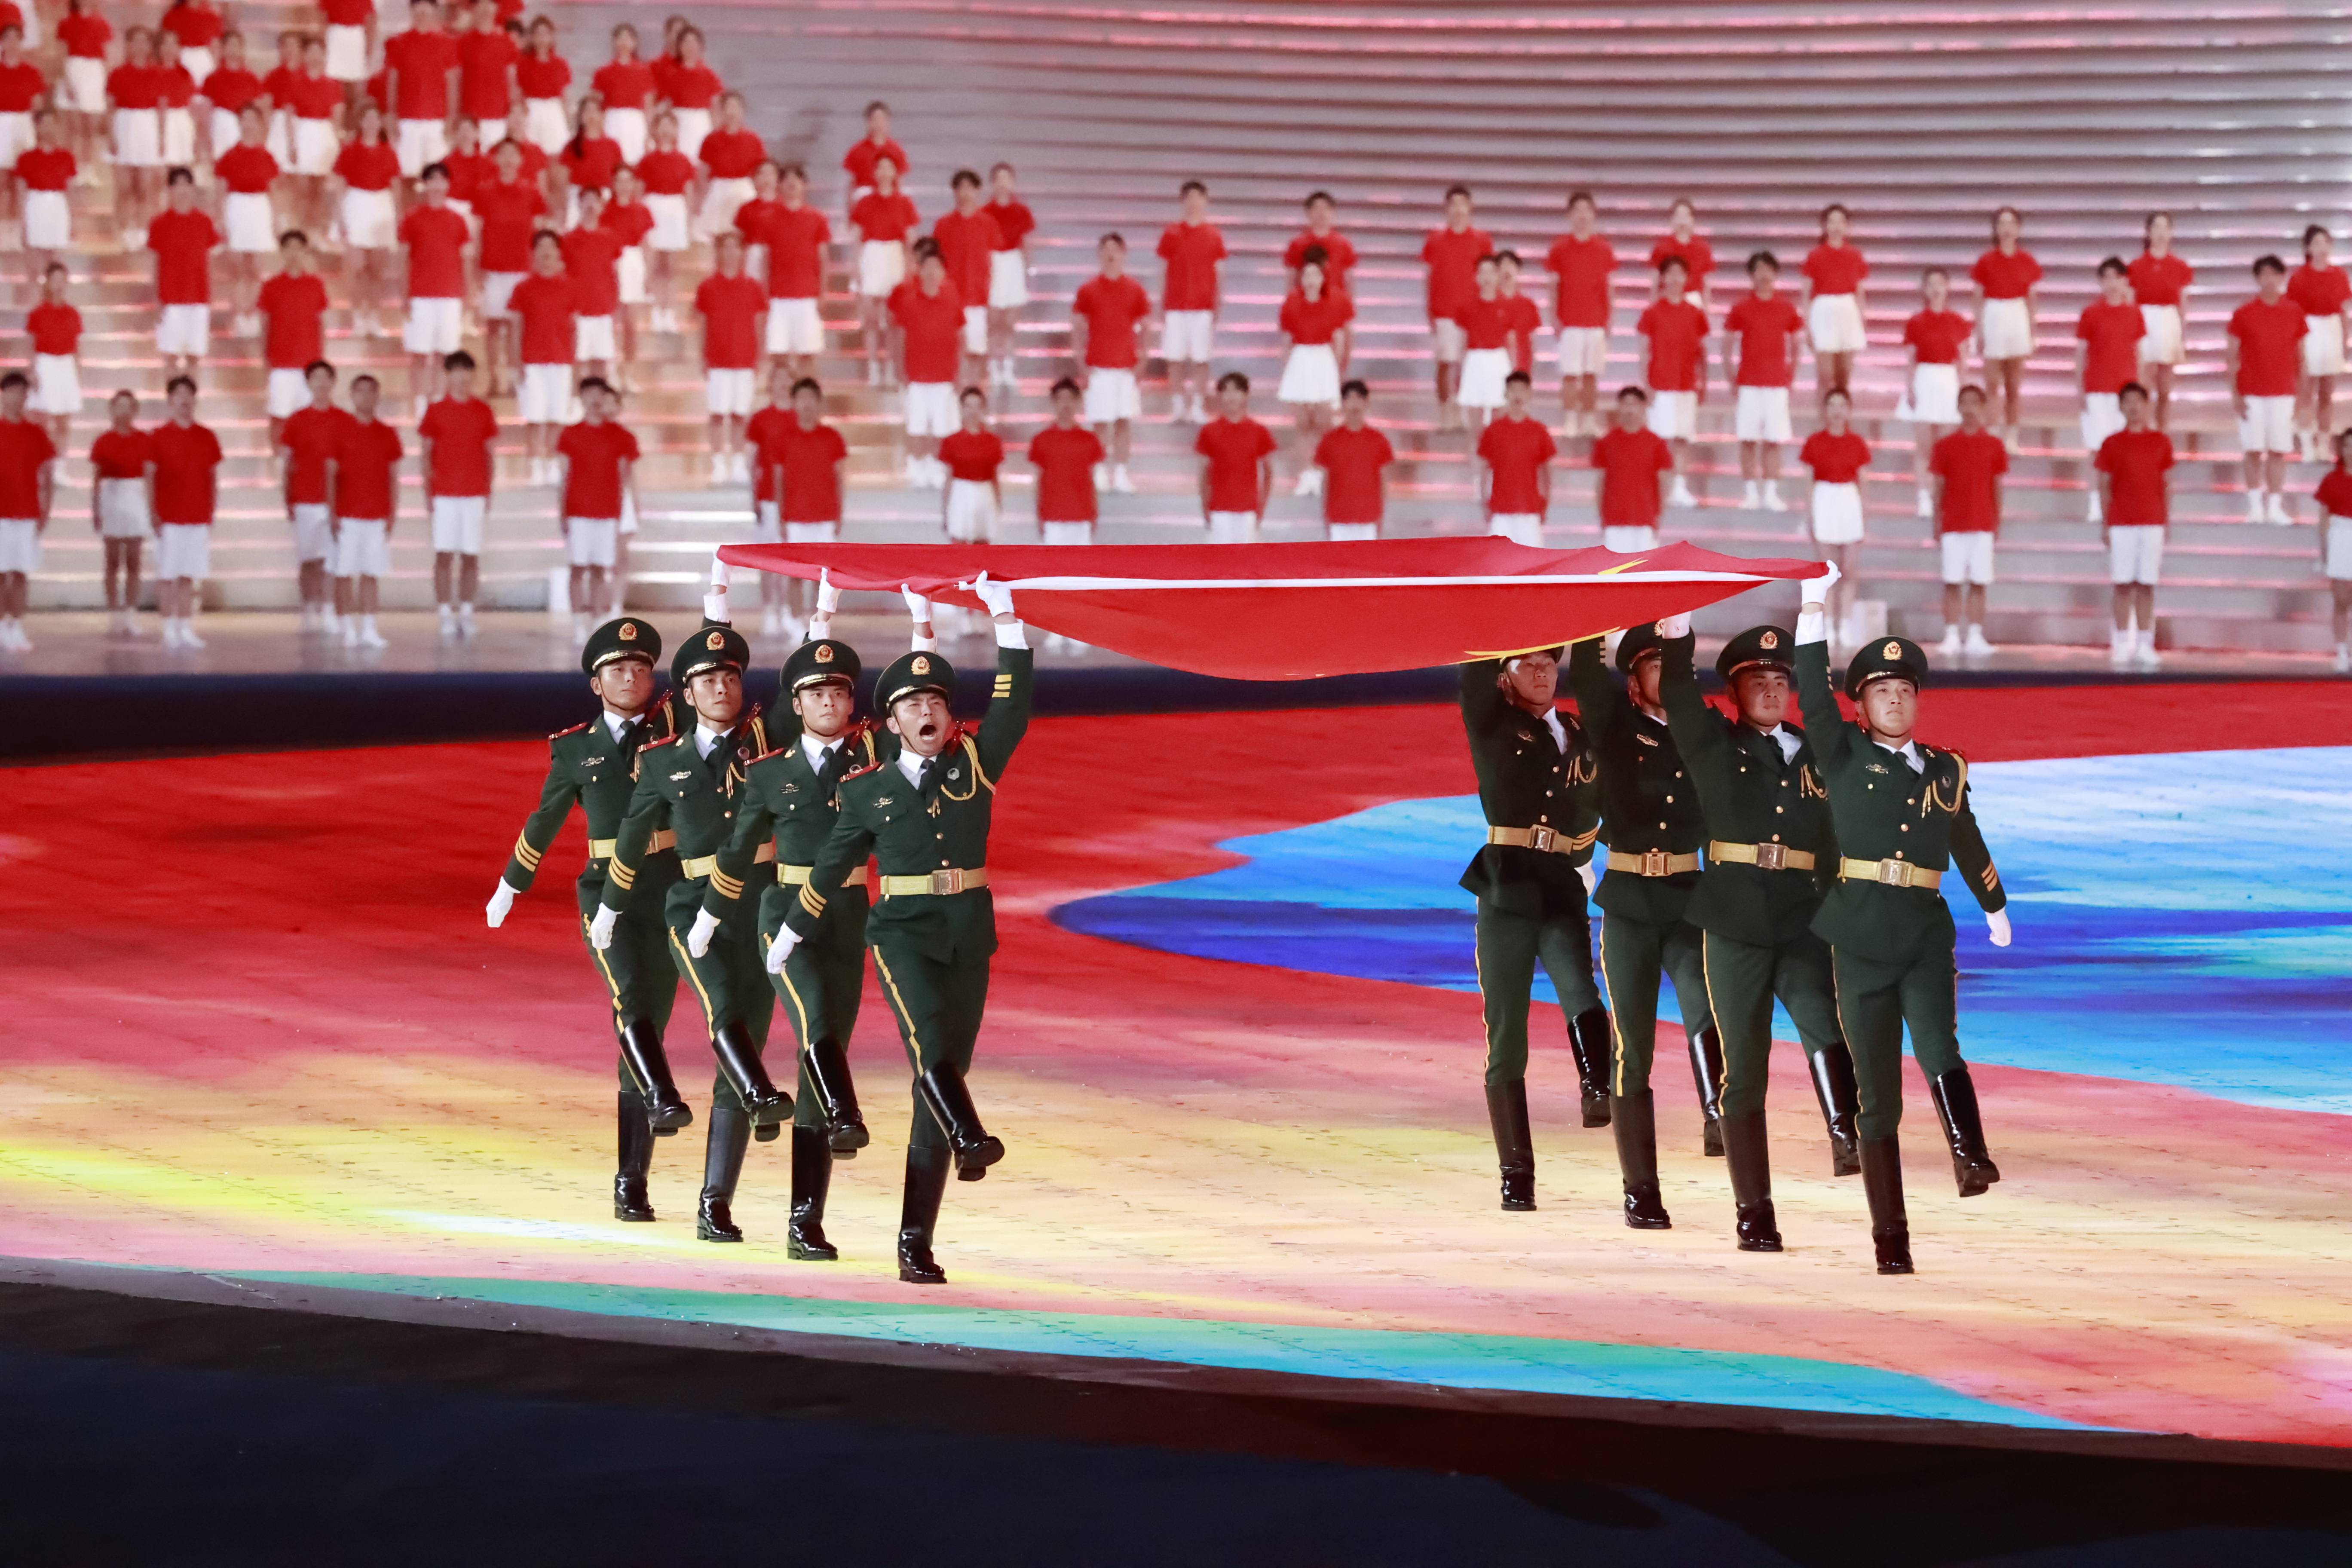 浙江杭州,杭州亚运会开幕式举行,武警礼兵手举国旗,正步入场